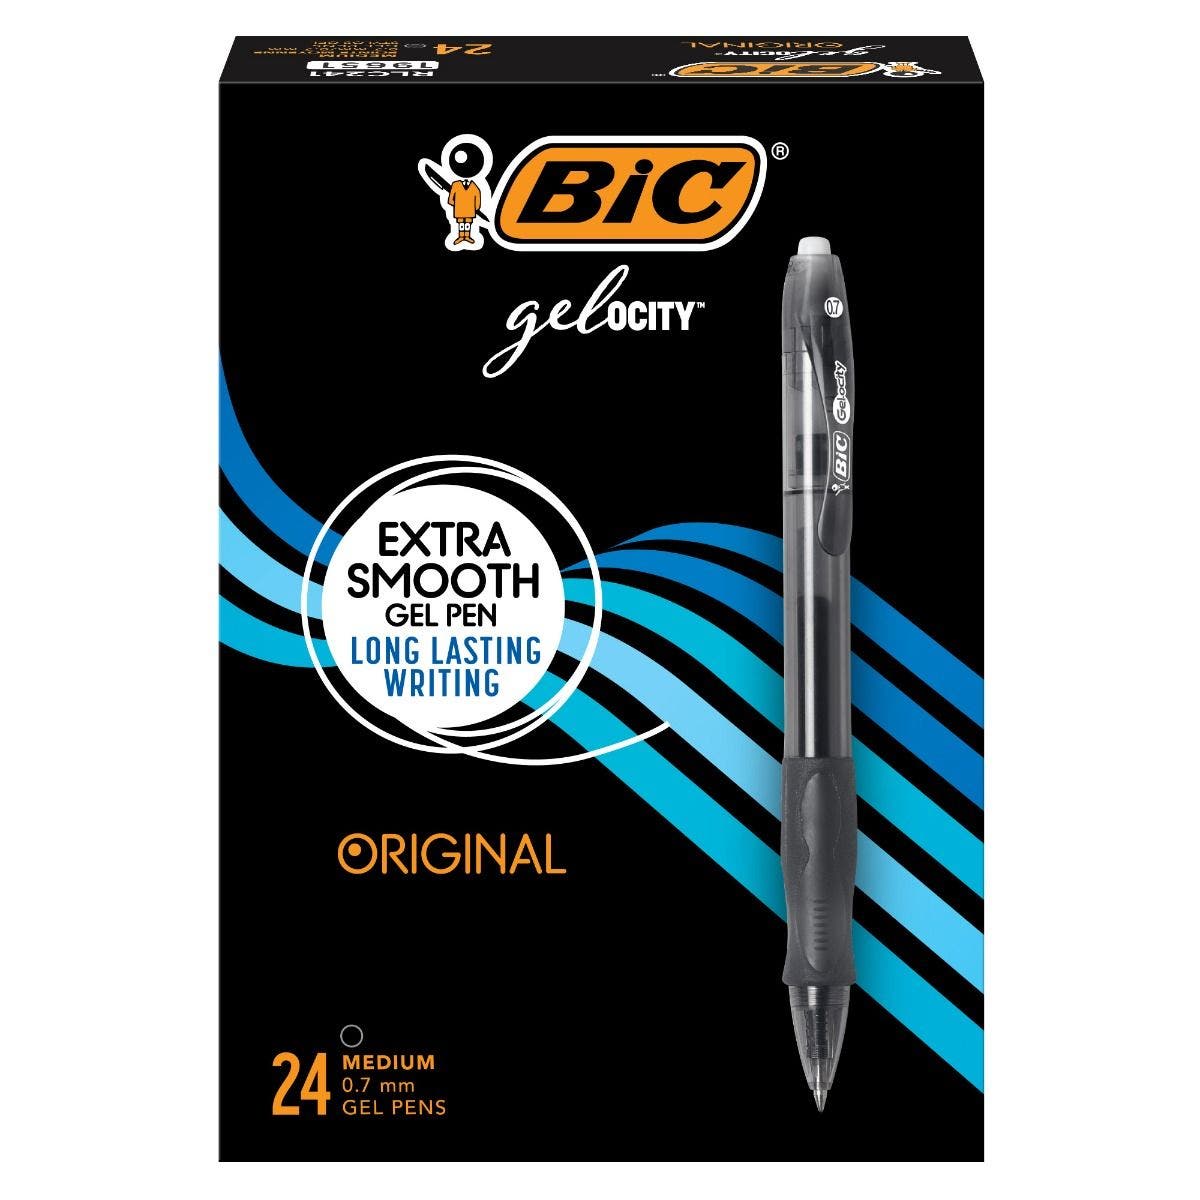 BIC Gel-ocity Original Retractable Gel Pen, 0.7 mm Point, Black, 24-Count